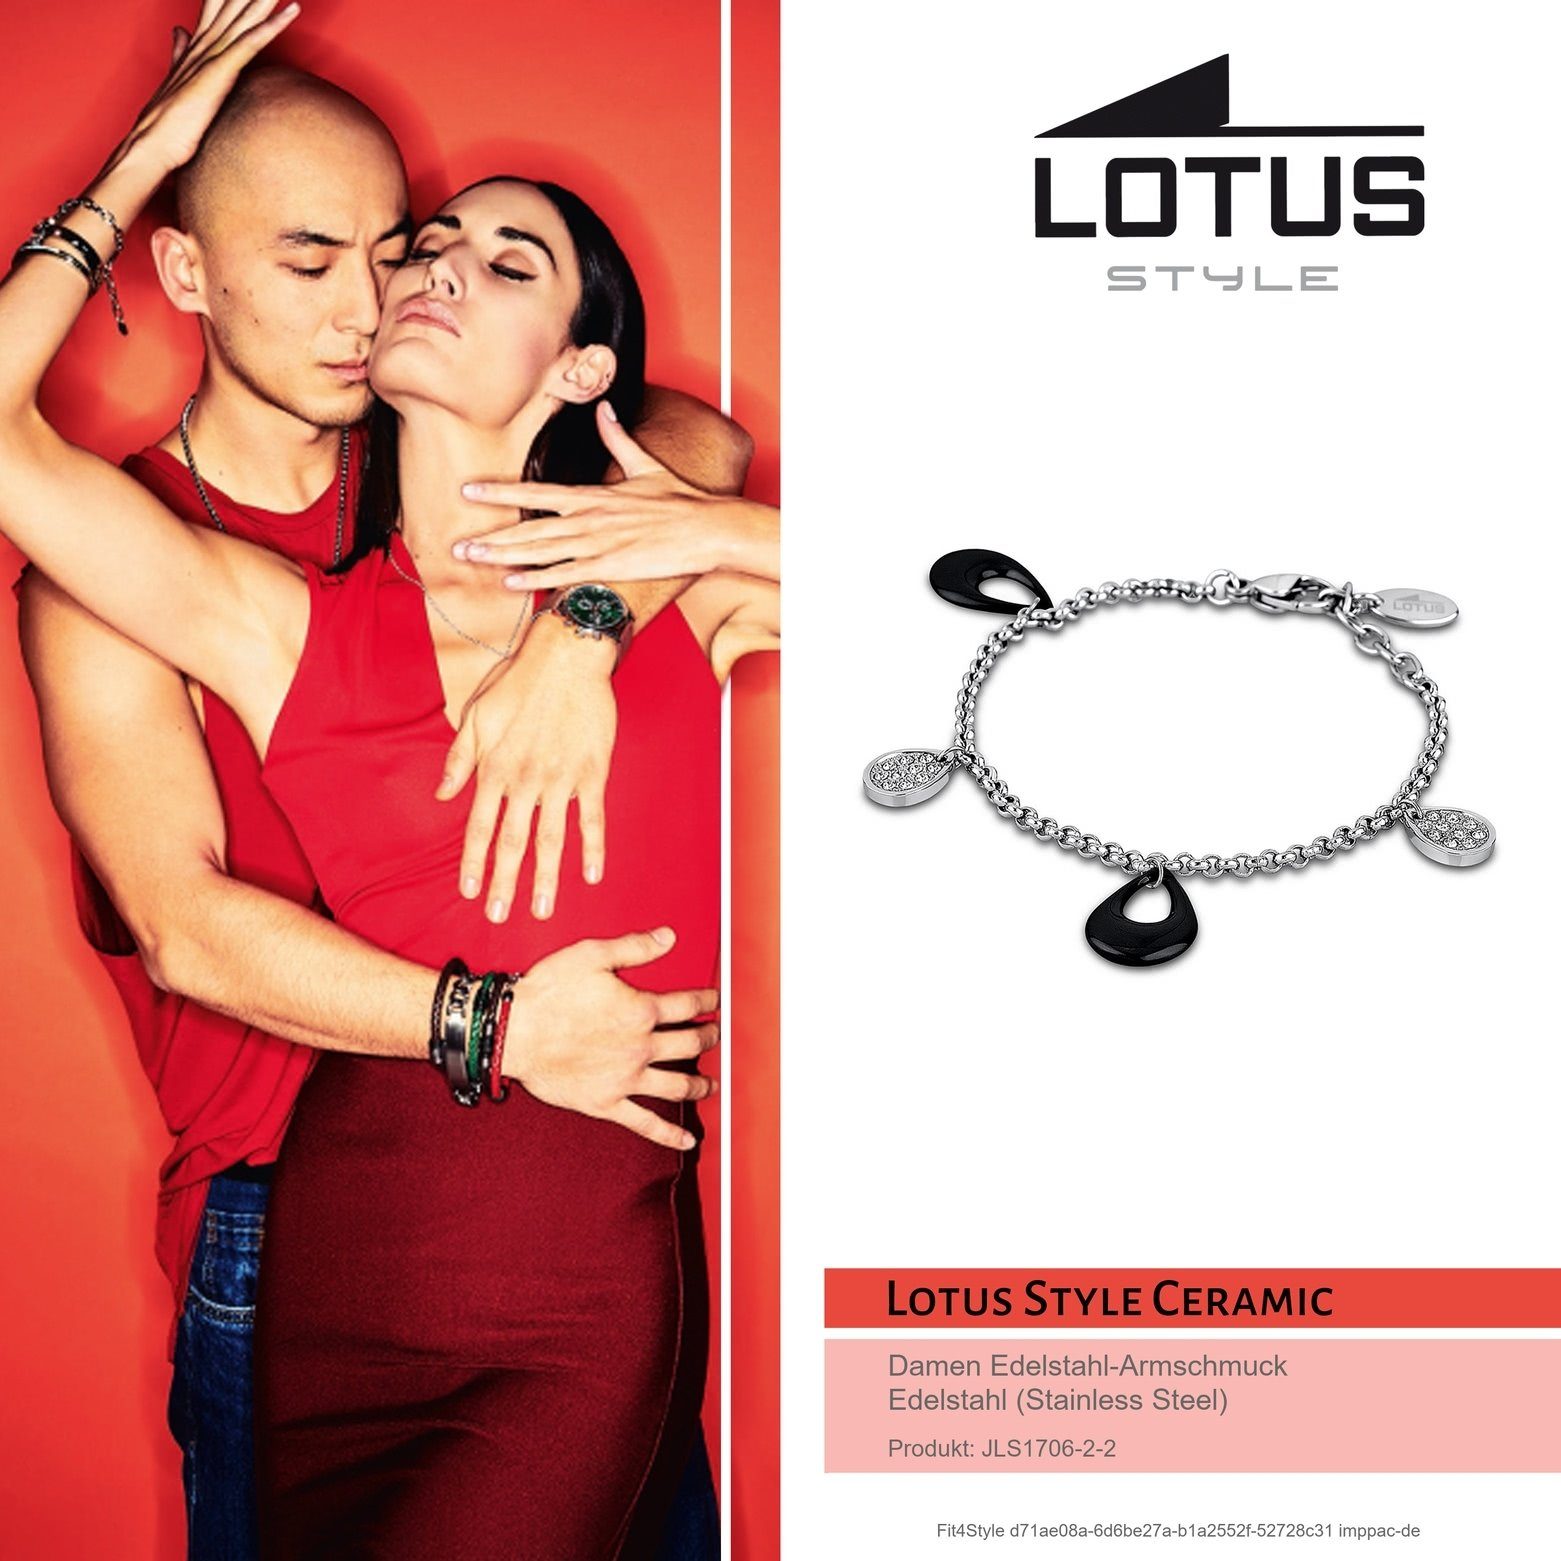 Style Damen Style Lotus schwarz für Armbänder Edelstahlarmband Edelstahl Lotus (Armband), LS1706-2/2 Armband (Stainless Steel)